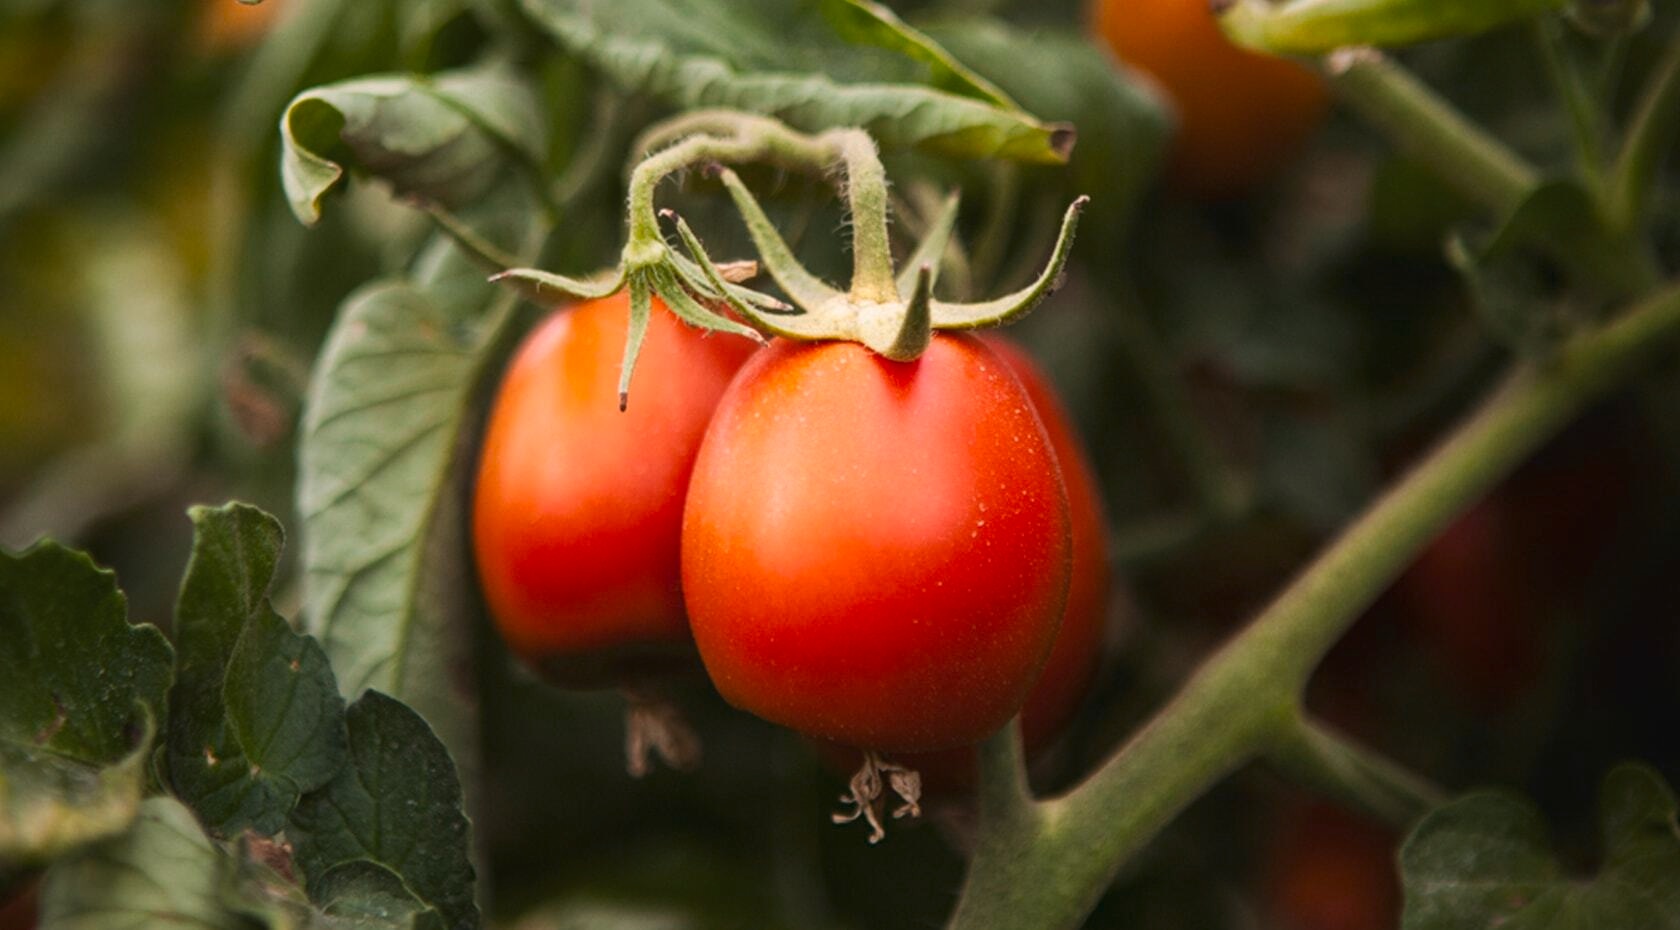 Nimm ein Bündel Tomaten und schüttele es. Wenn die Tomaten herunterfallen, sind sie reif.